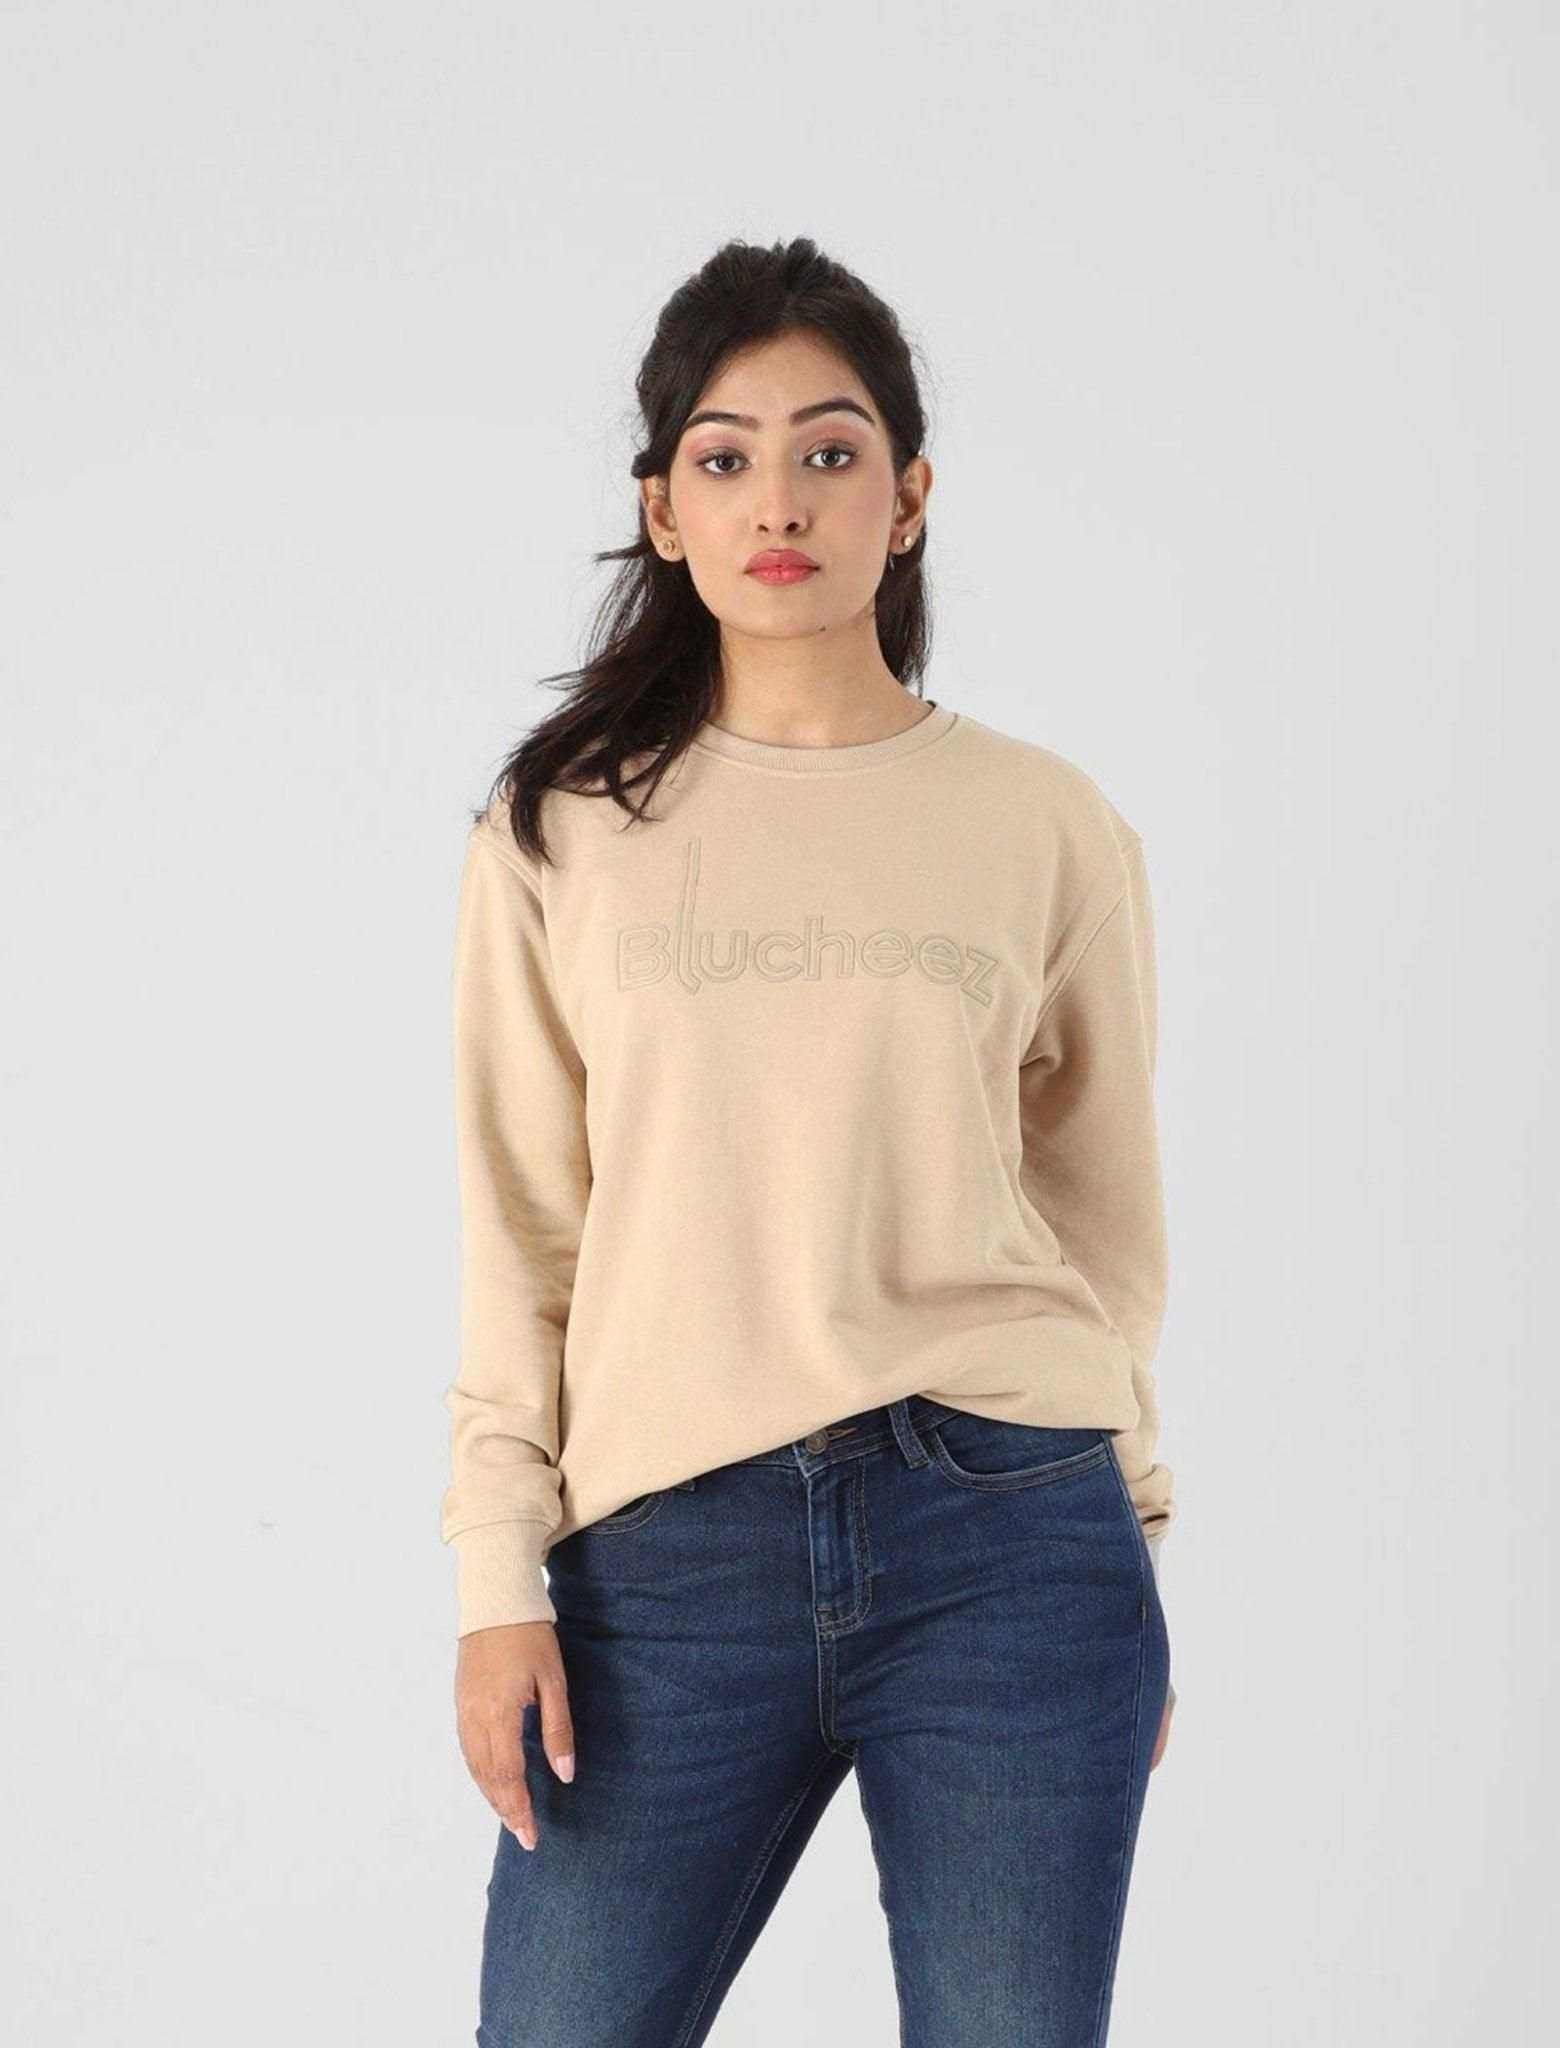 High Density Printed Sweatshirt - Blucheez